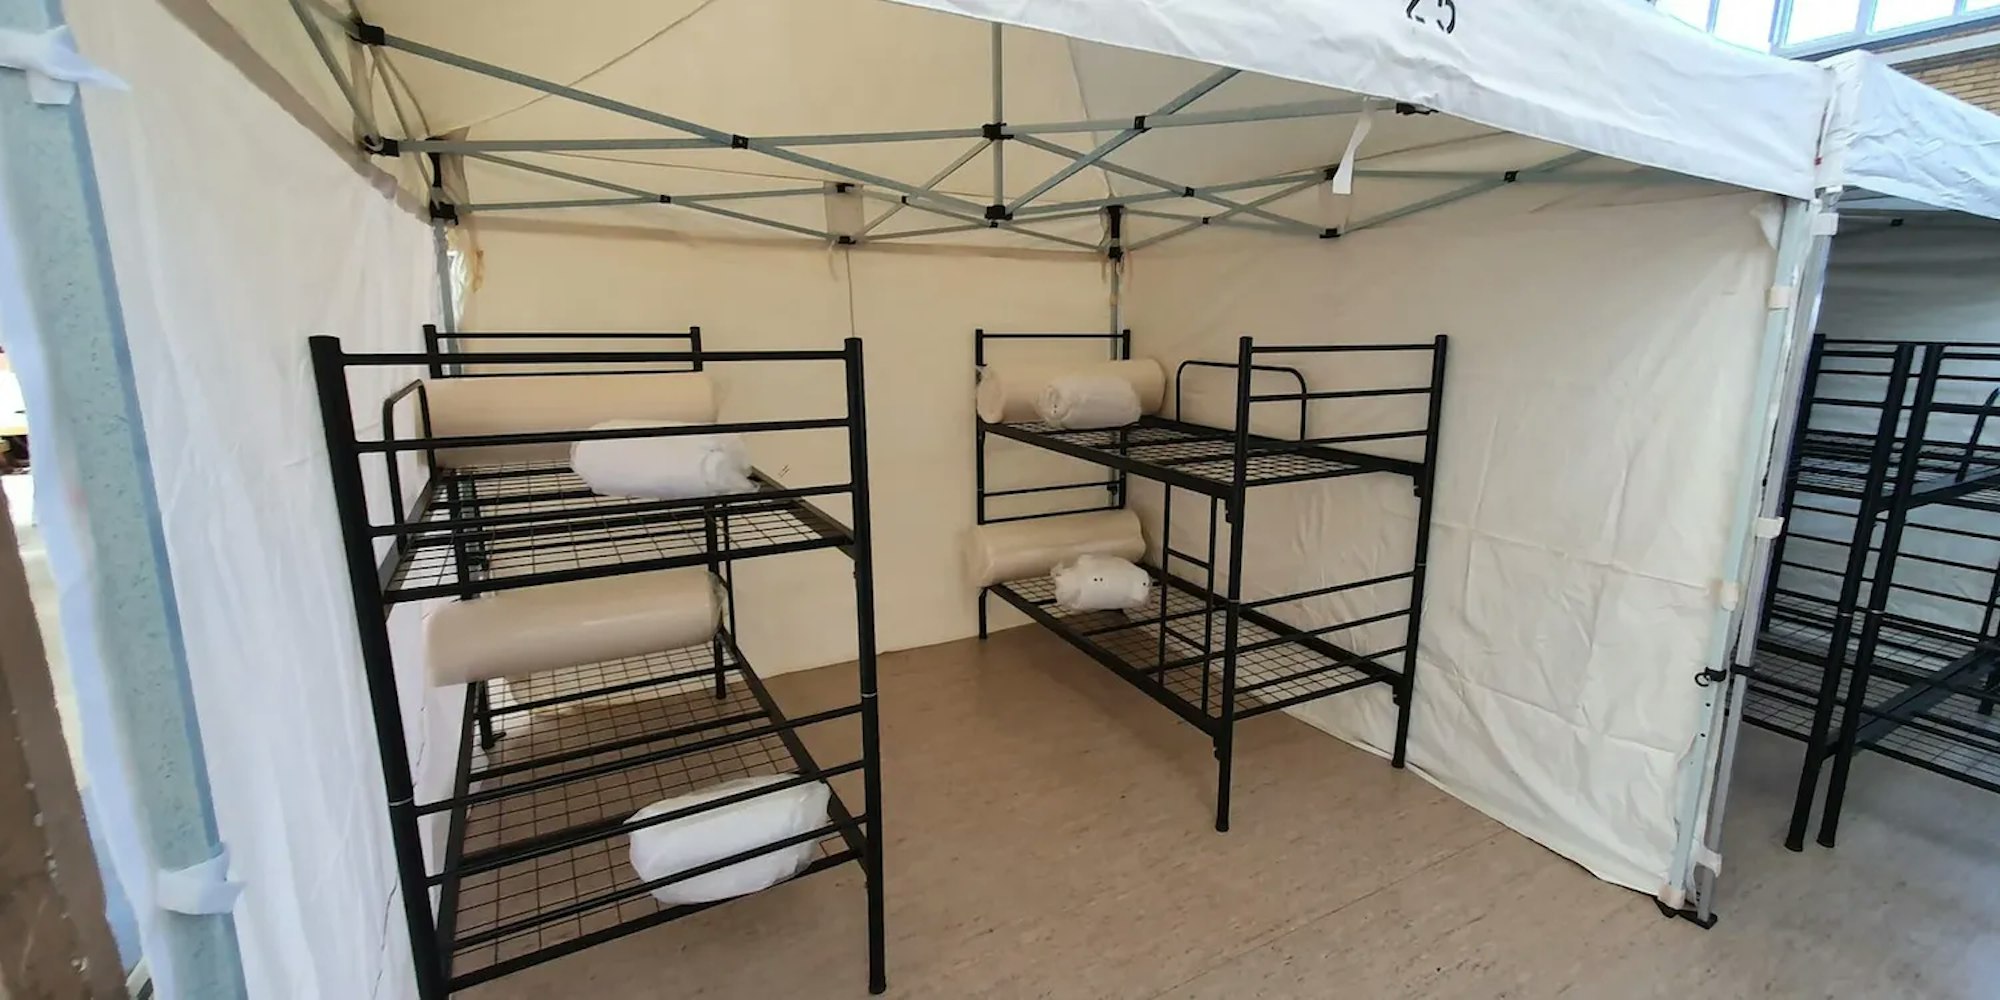 Das Foto zeigt eine Turnhalle in Frechen, in der Geflüchtete wohnen. In Zelten befinden sich jeweils zwei Doppelbetten. 

